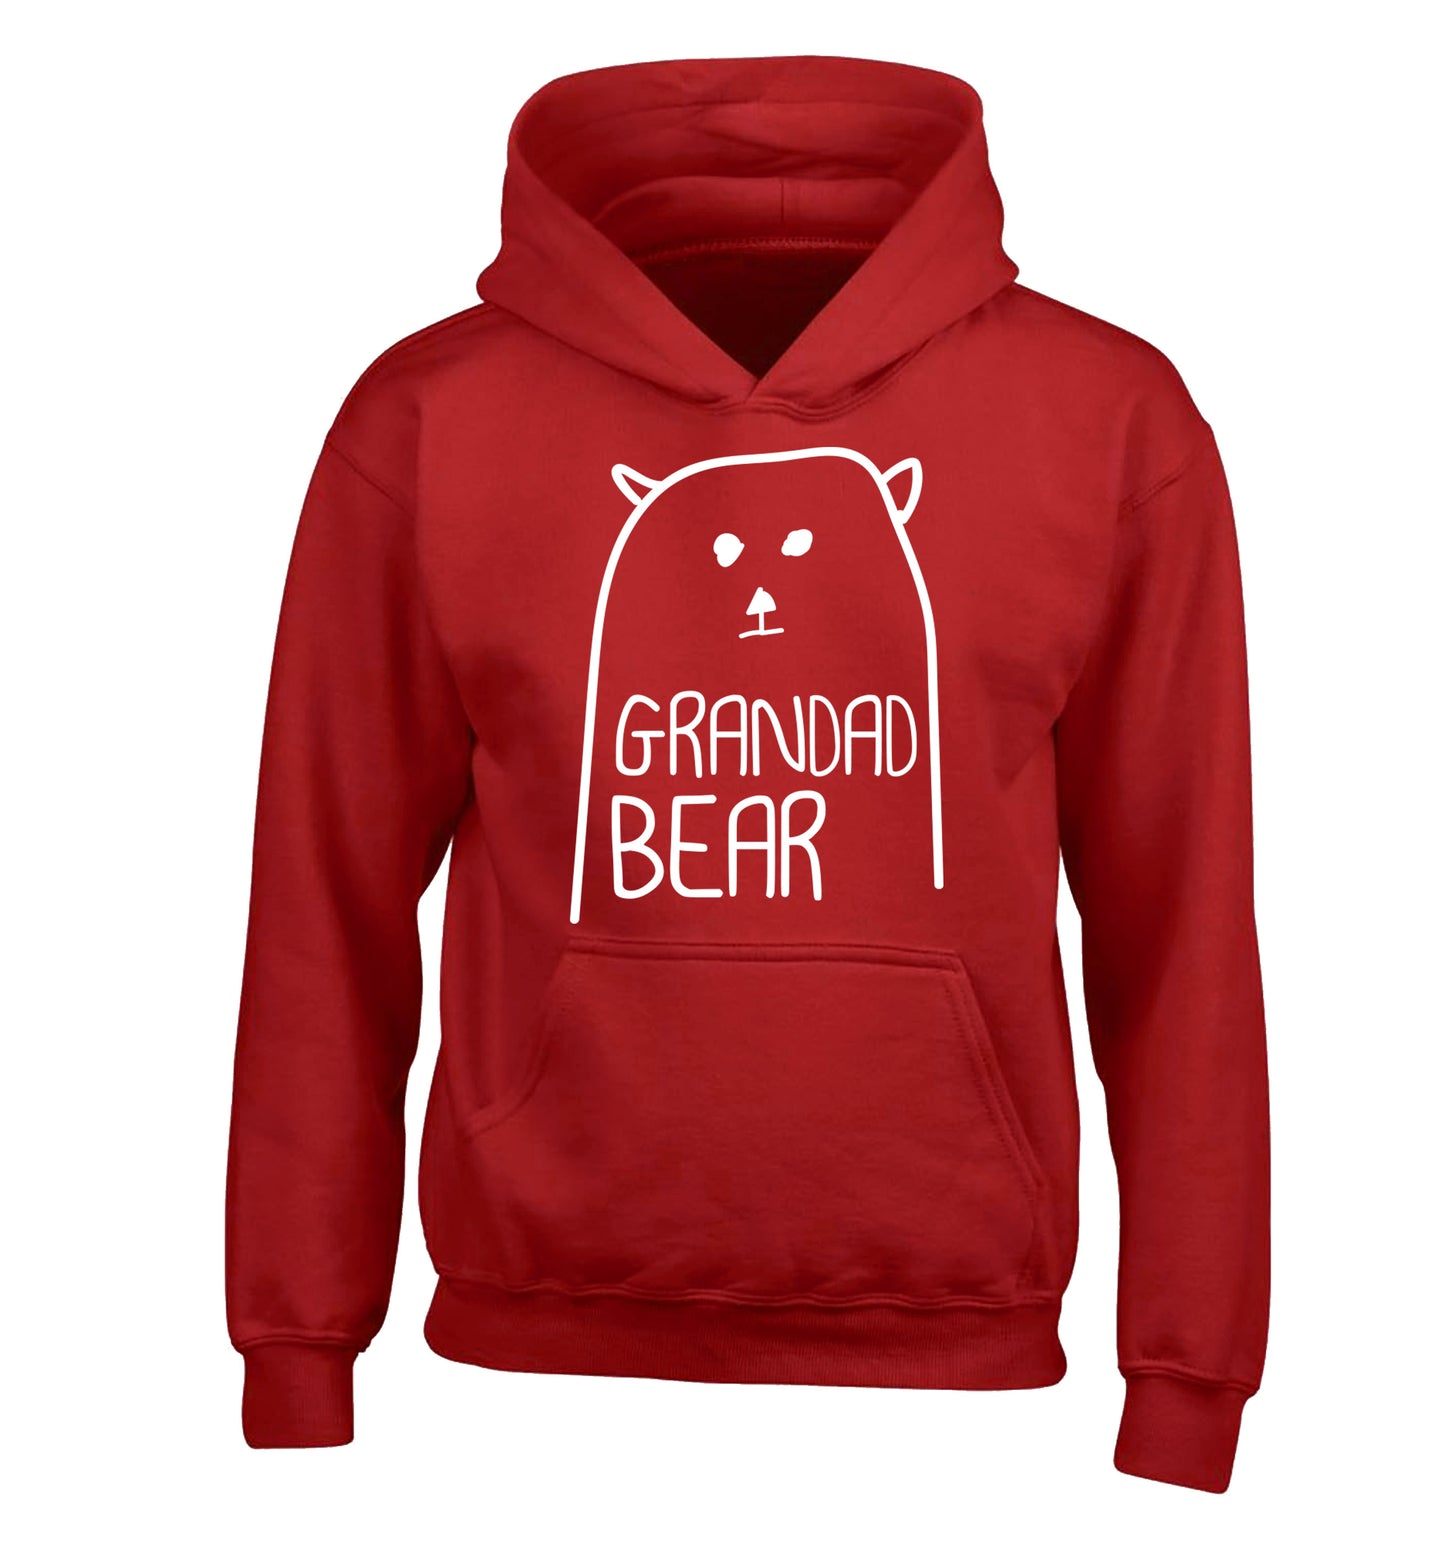 Grandad bear children's red hoodie 12-13 Years